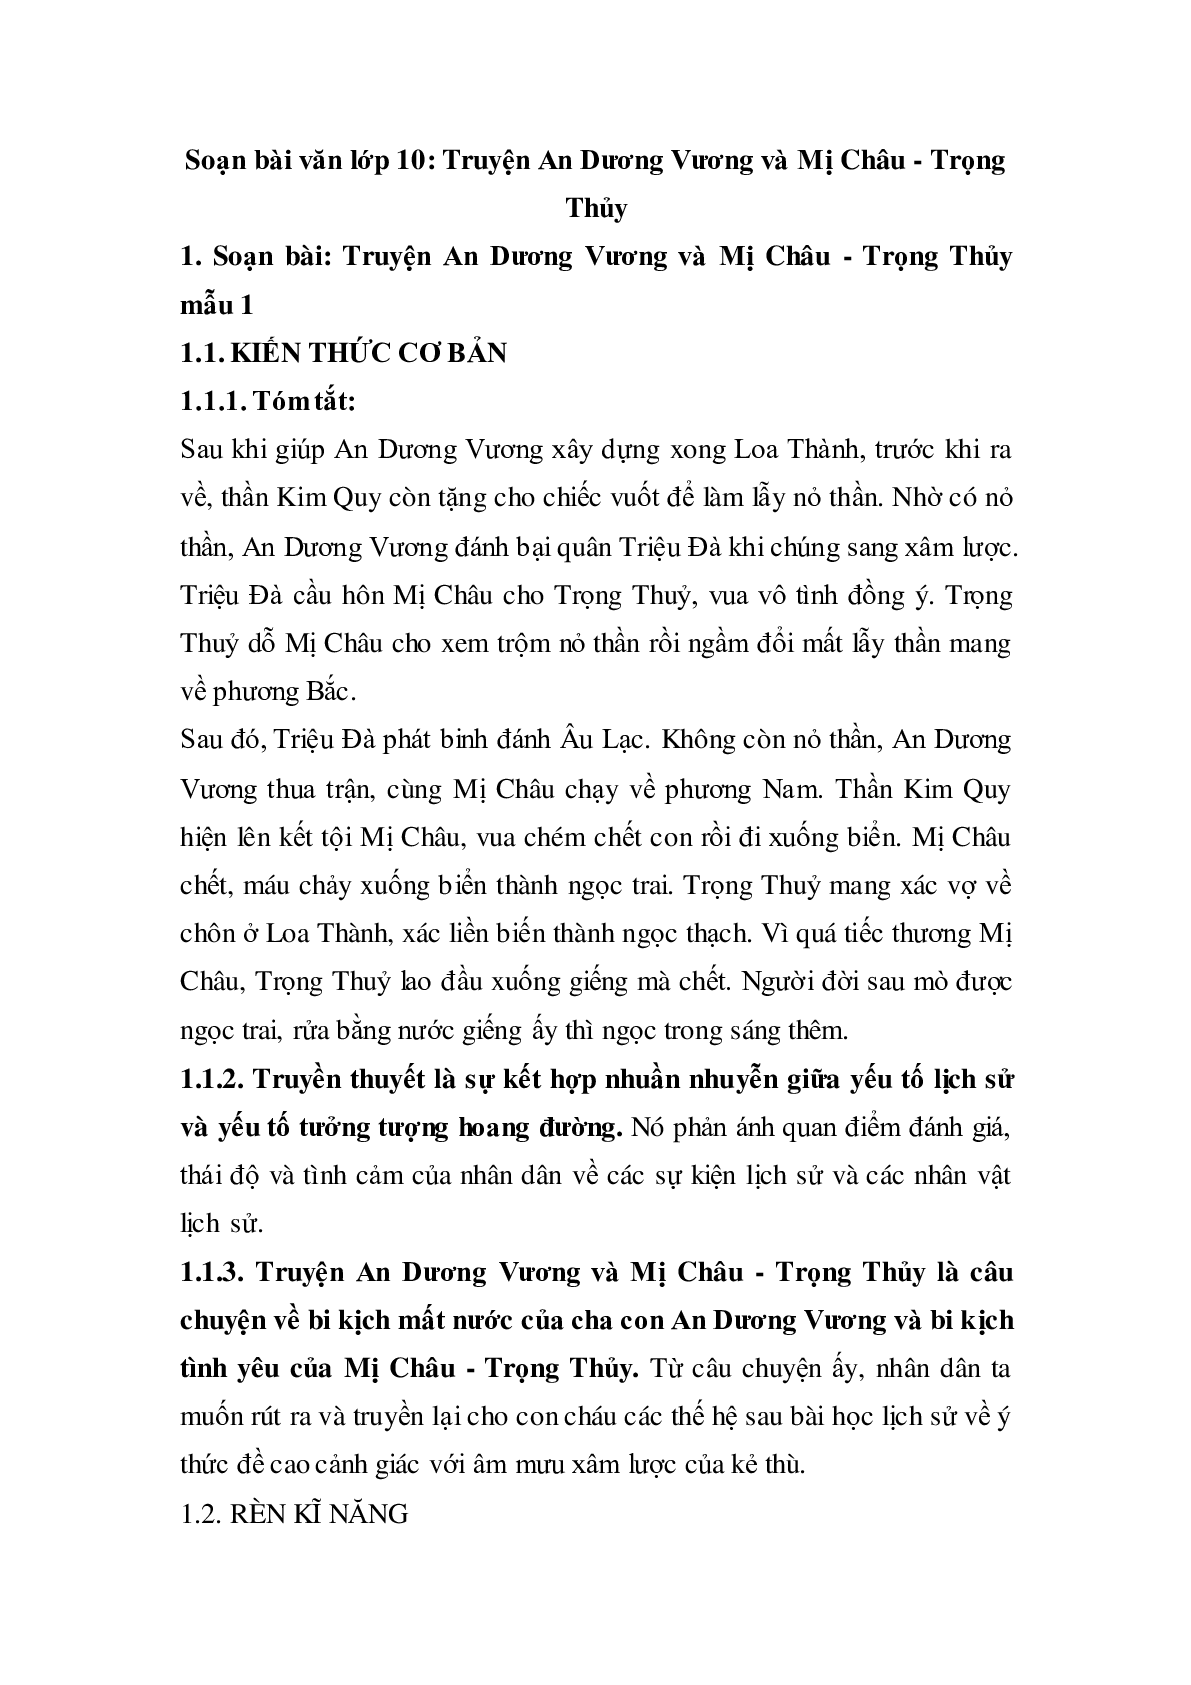 Soạn bài Truyện An Dương Vương và Mị Châu - Trọng Thủy - ngắn nhất Soạn văn 10 (trang 1)